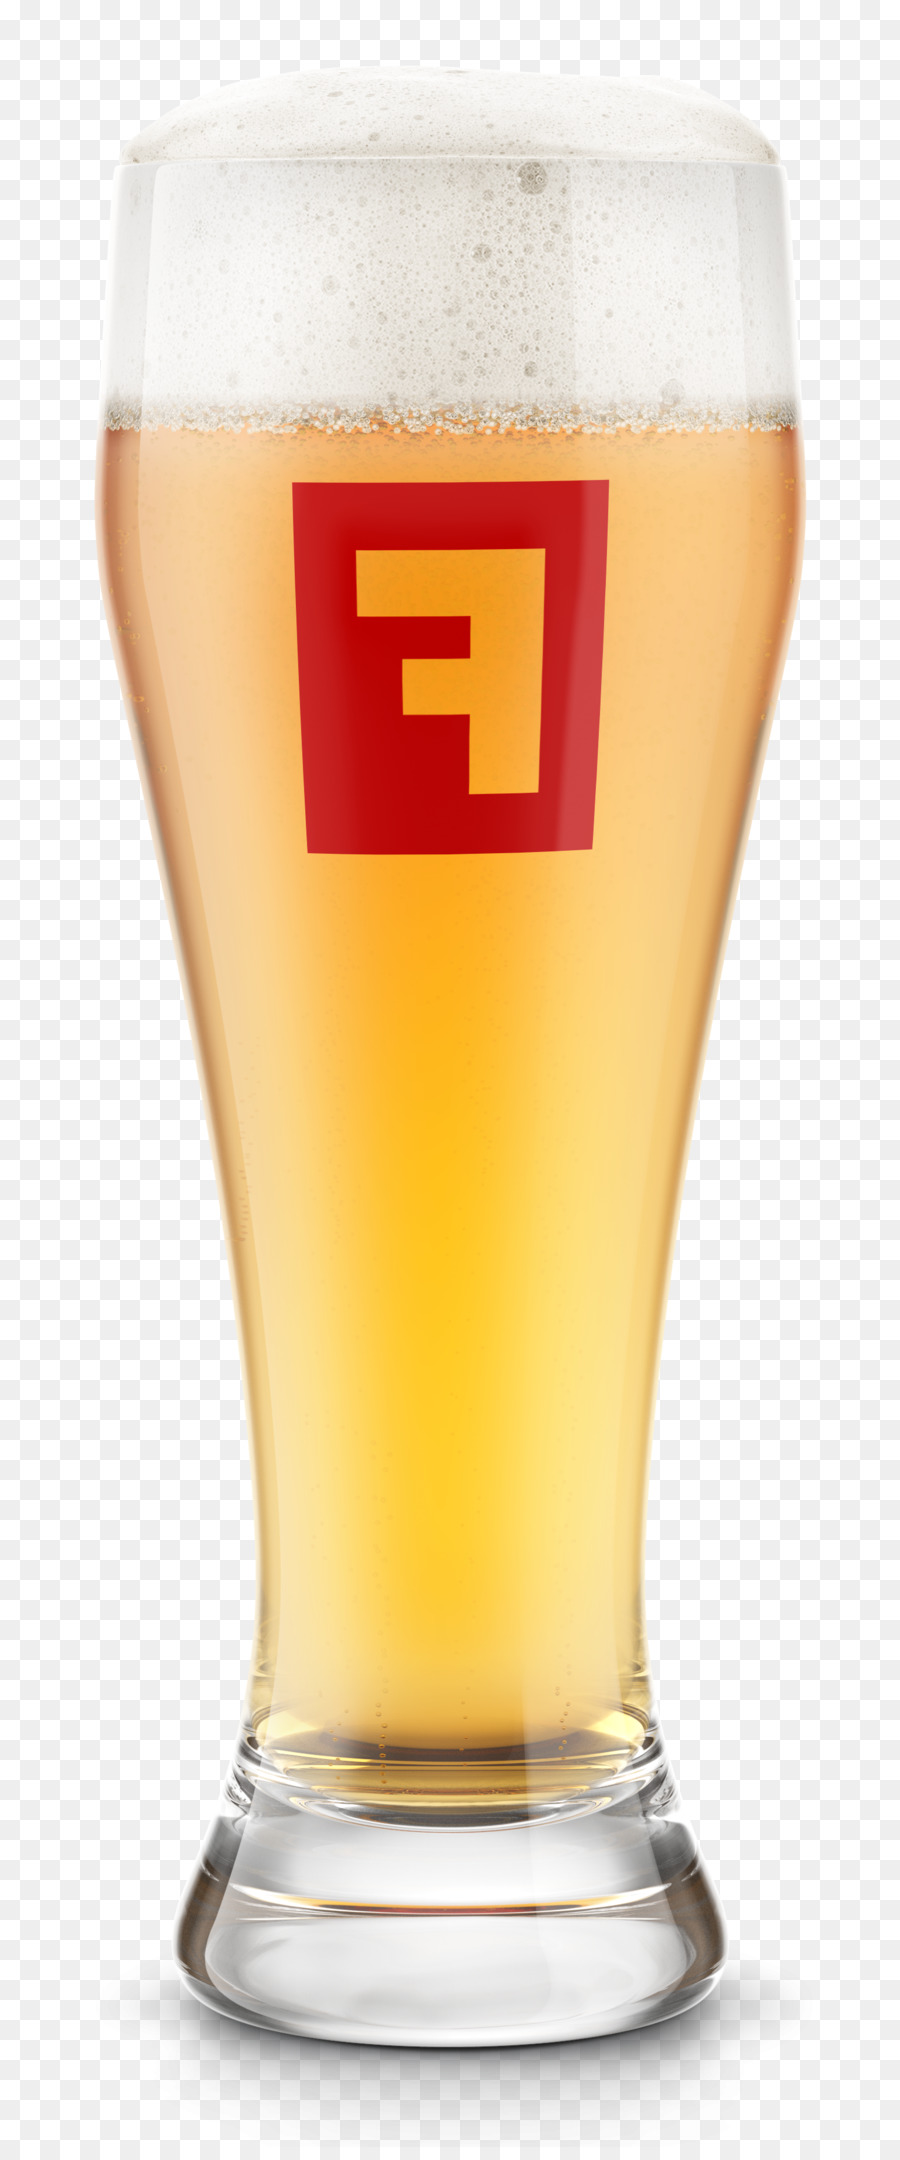 Bier cocktail Fullsteam Brauerei Bier Glas Weizen Bier - Bier